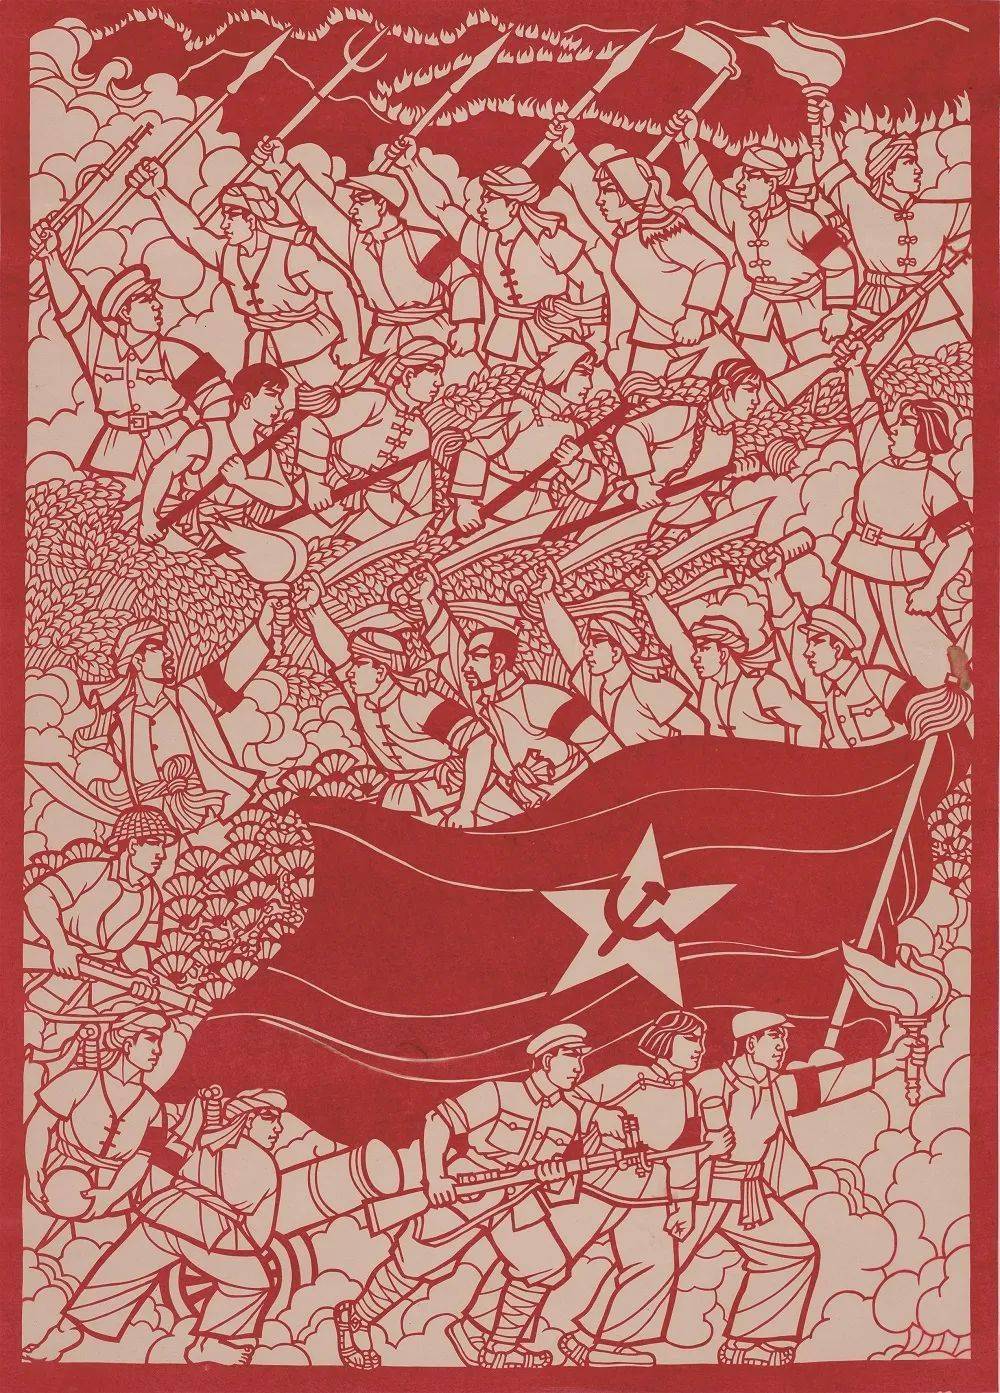 本次展览共精选红色题材剪纸作品30幅,分为"建国前的峥嵘岁月"及"新